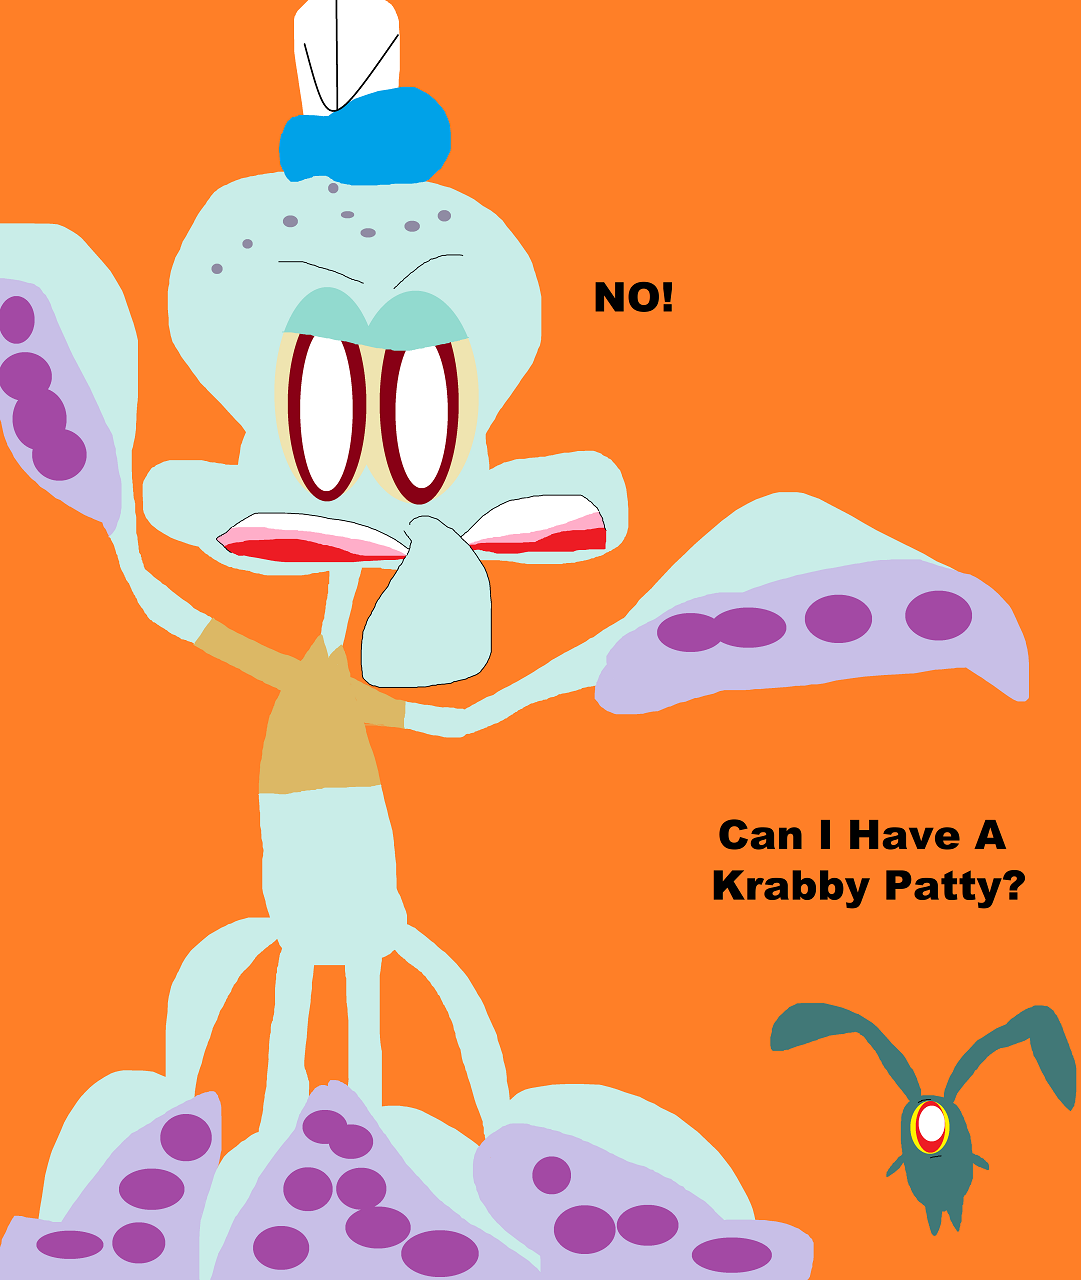 Can I Have A Krabby Patty by Falconlobo